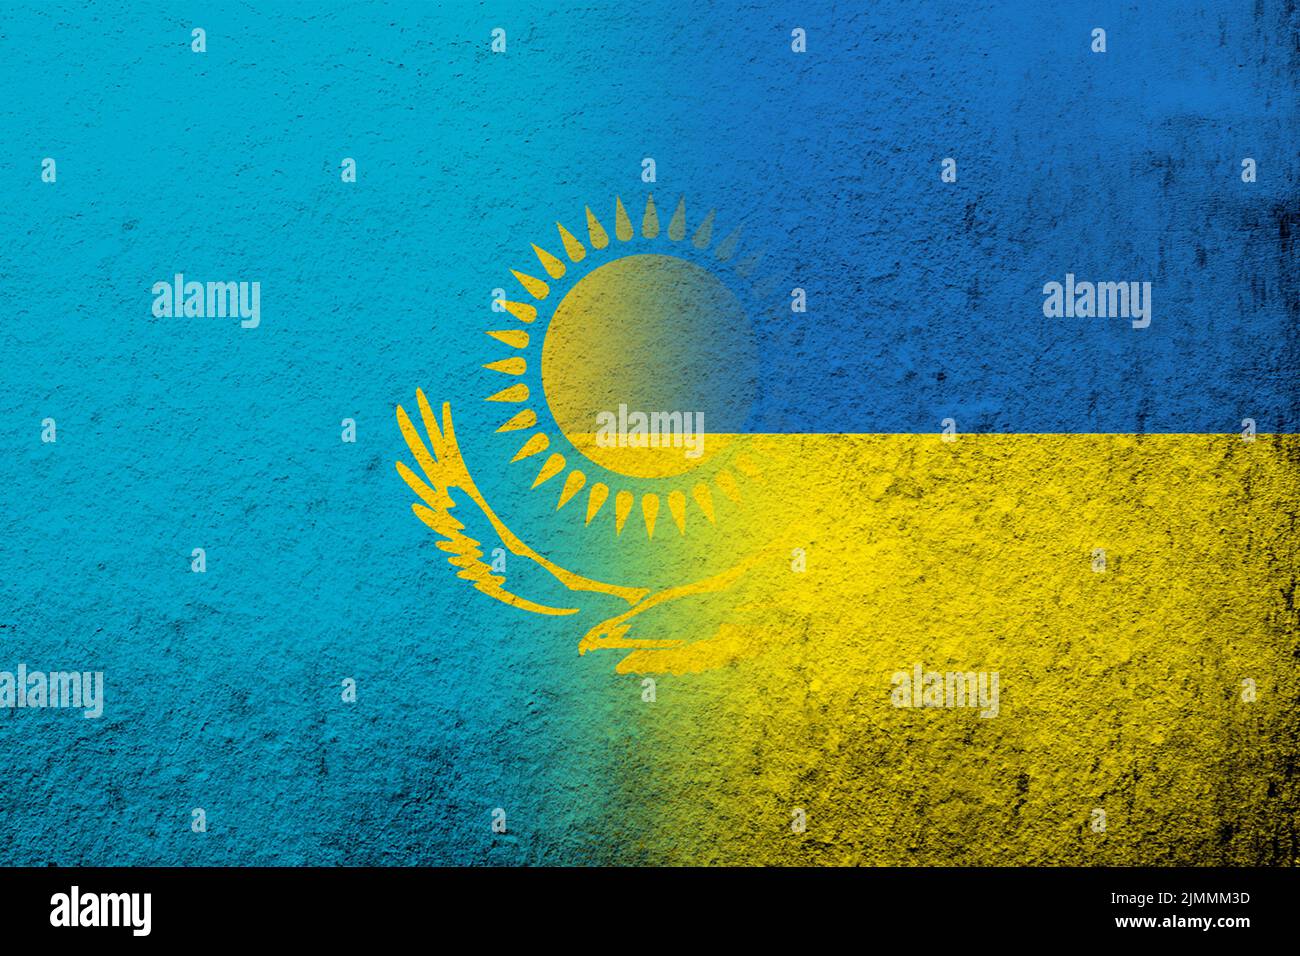 La République du Kazakhstan drapeau national avec drapeau national de l'Ukraine. Grunge l'arrière-plan Banque D'Images